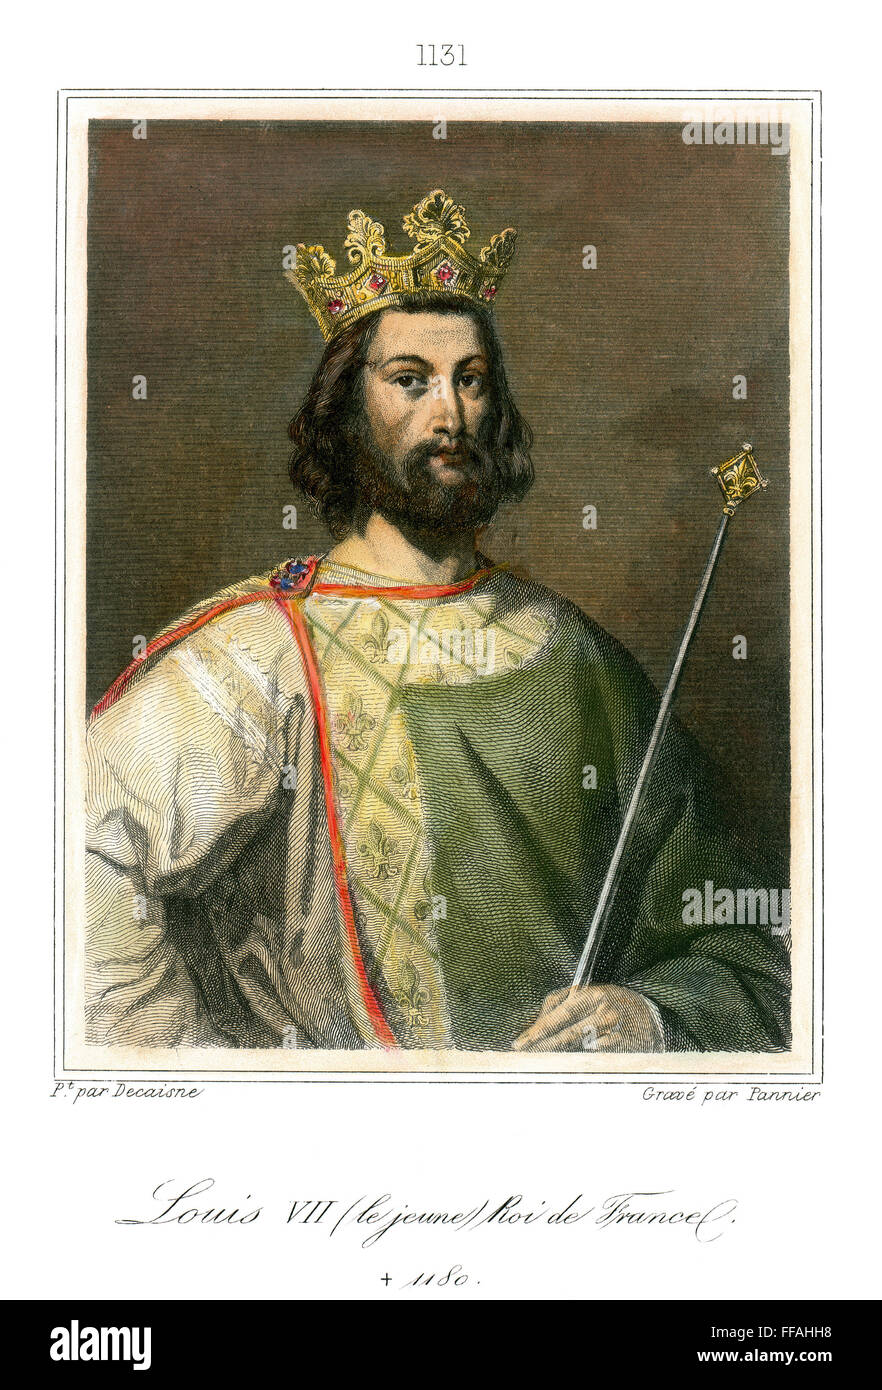 LOUIS VII (1121?-1180). /nKing von Frankreich, 1137-1180. Stahl, Gravur, Französisch, 19. Jahrhundert. Stockfoto